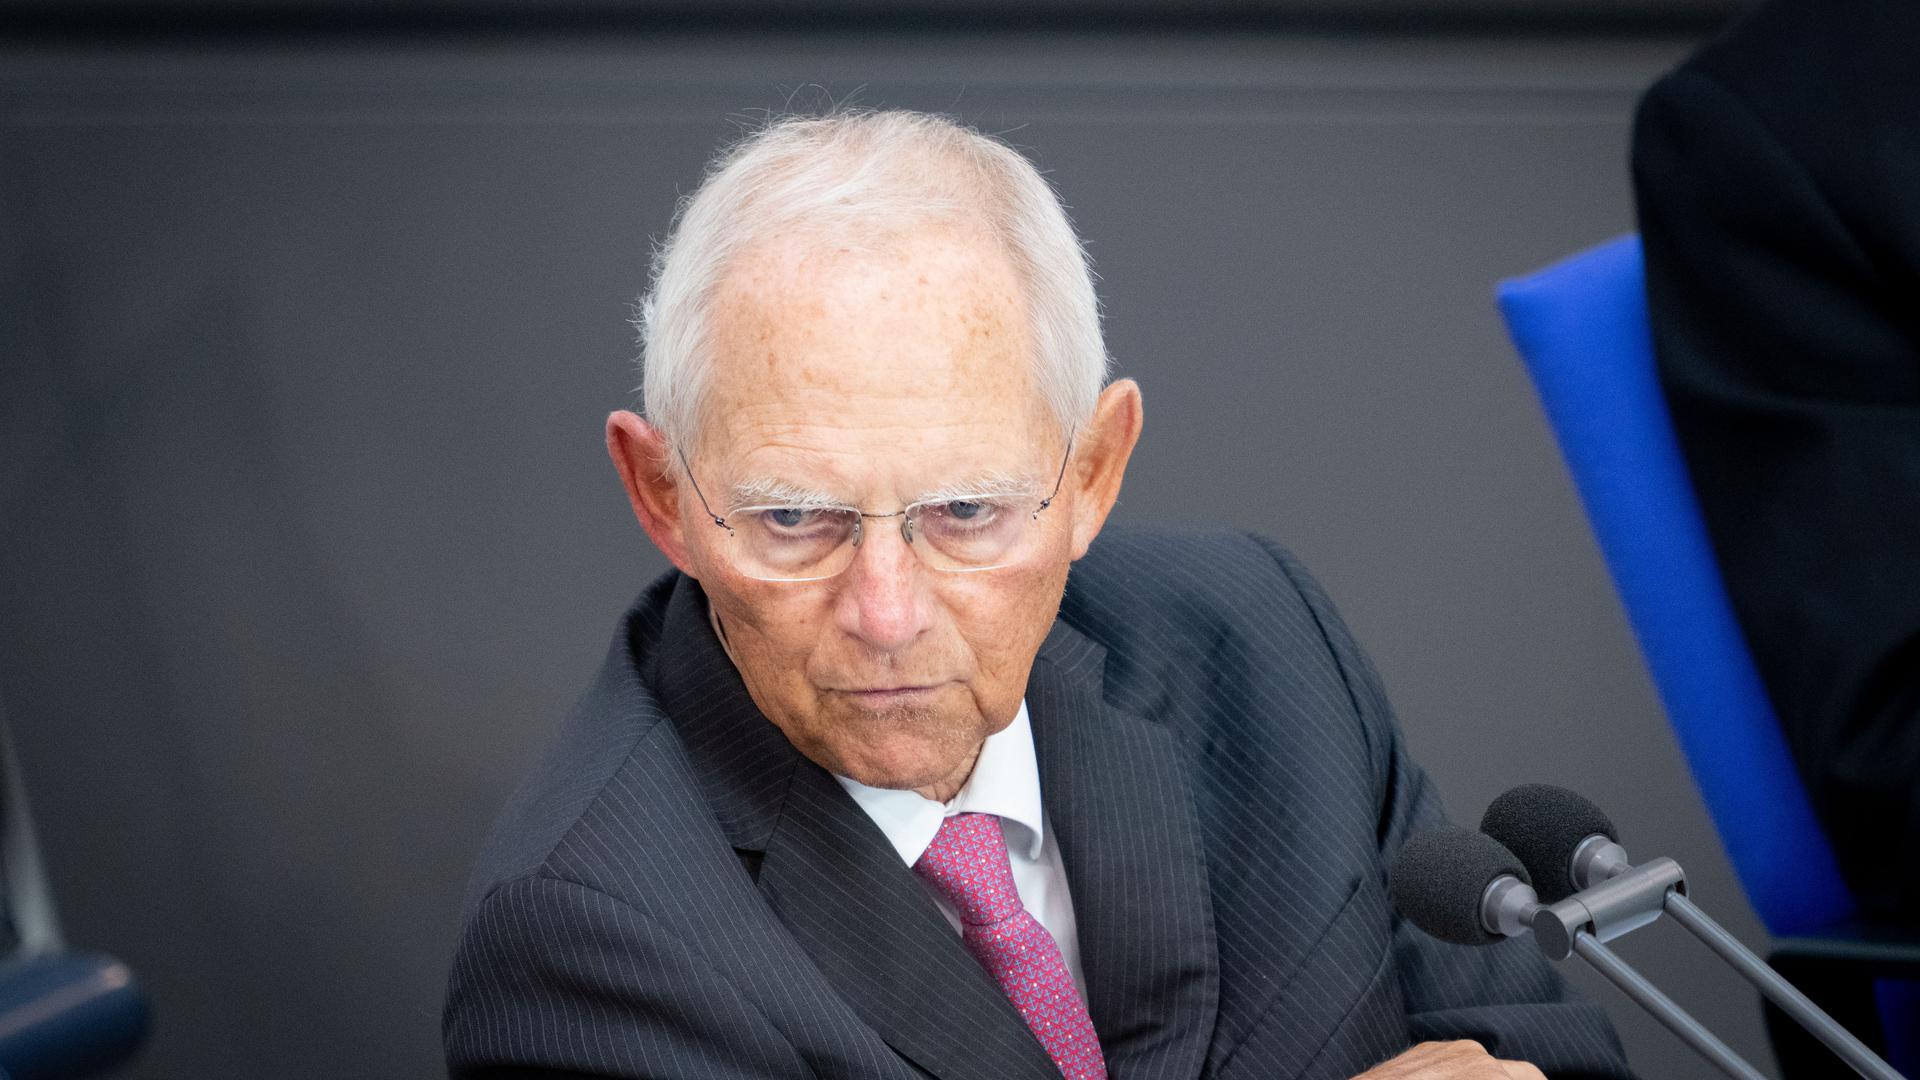 Eine beispiellose politische Karriere: Wolfgang Schäuble war Innenminister, Finanzminister, Kanzleramtsminister, er führte Fraktion und Partei und war zuletzt Bundestagspräsident. Dieses Amt hätte er gerne auch noch weiter ausgeübt, doch die Union stellt nicht mehr die größte Fraktion. Einen großen Auftritt hat er allerdings noch.